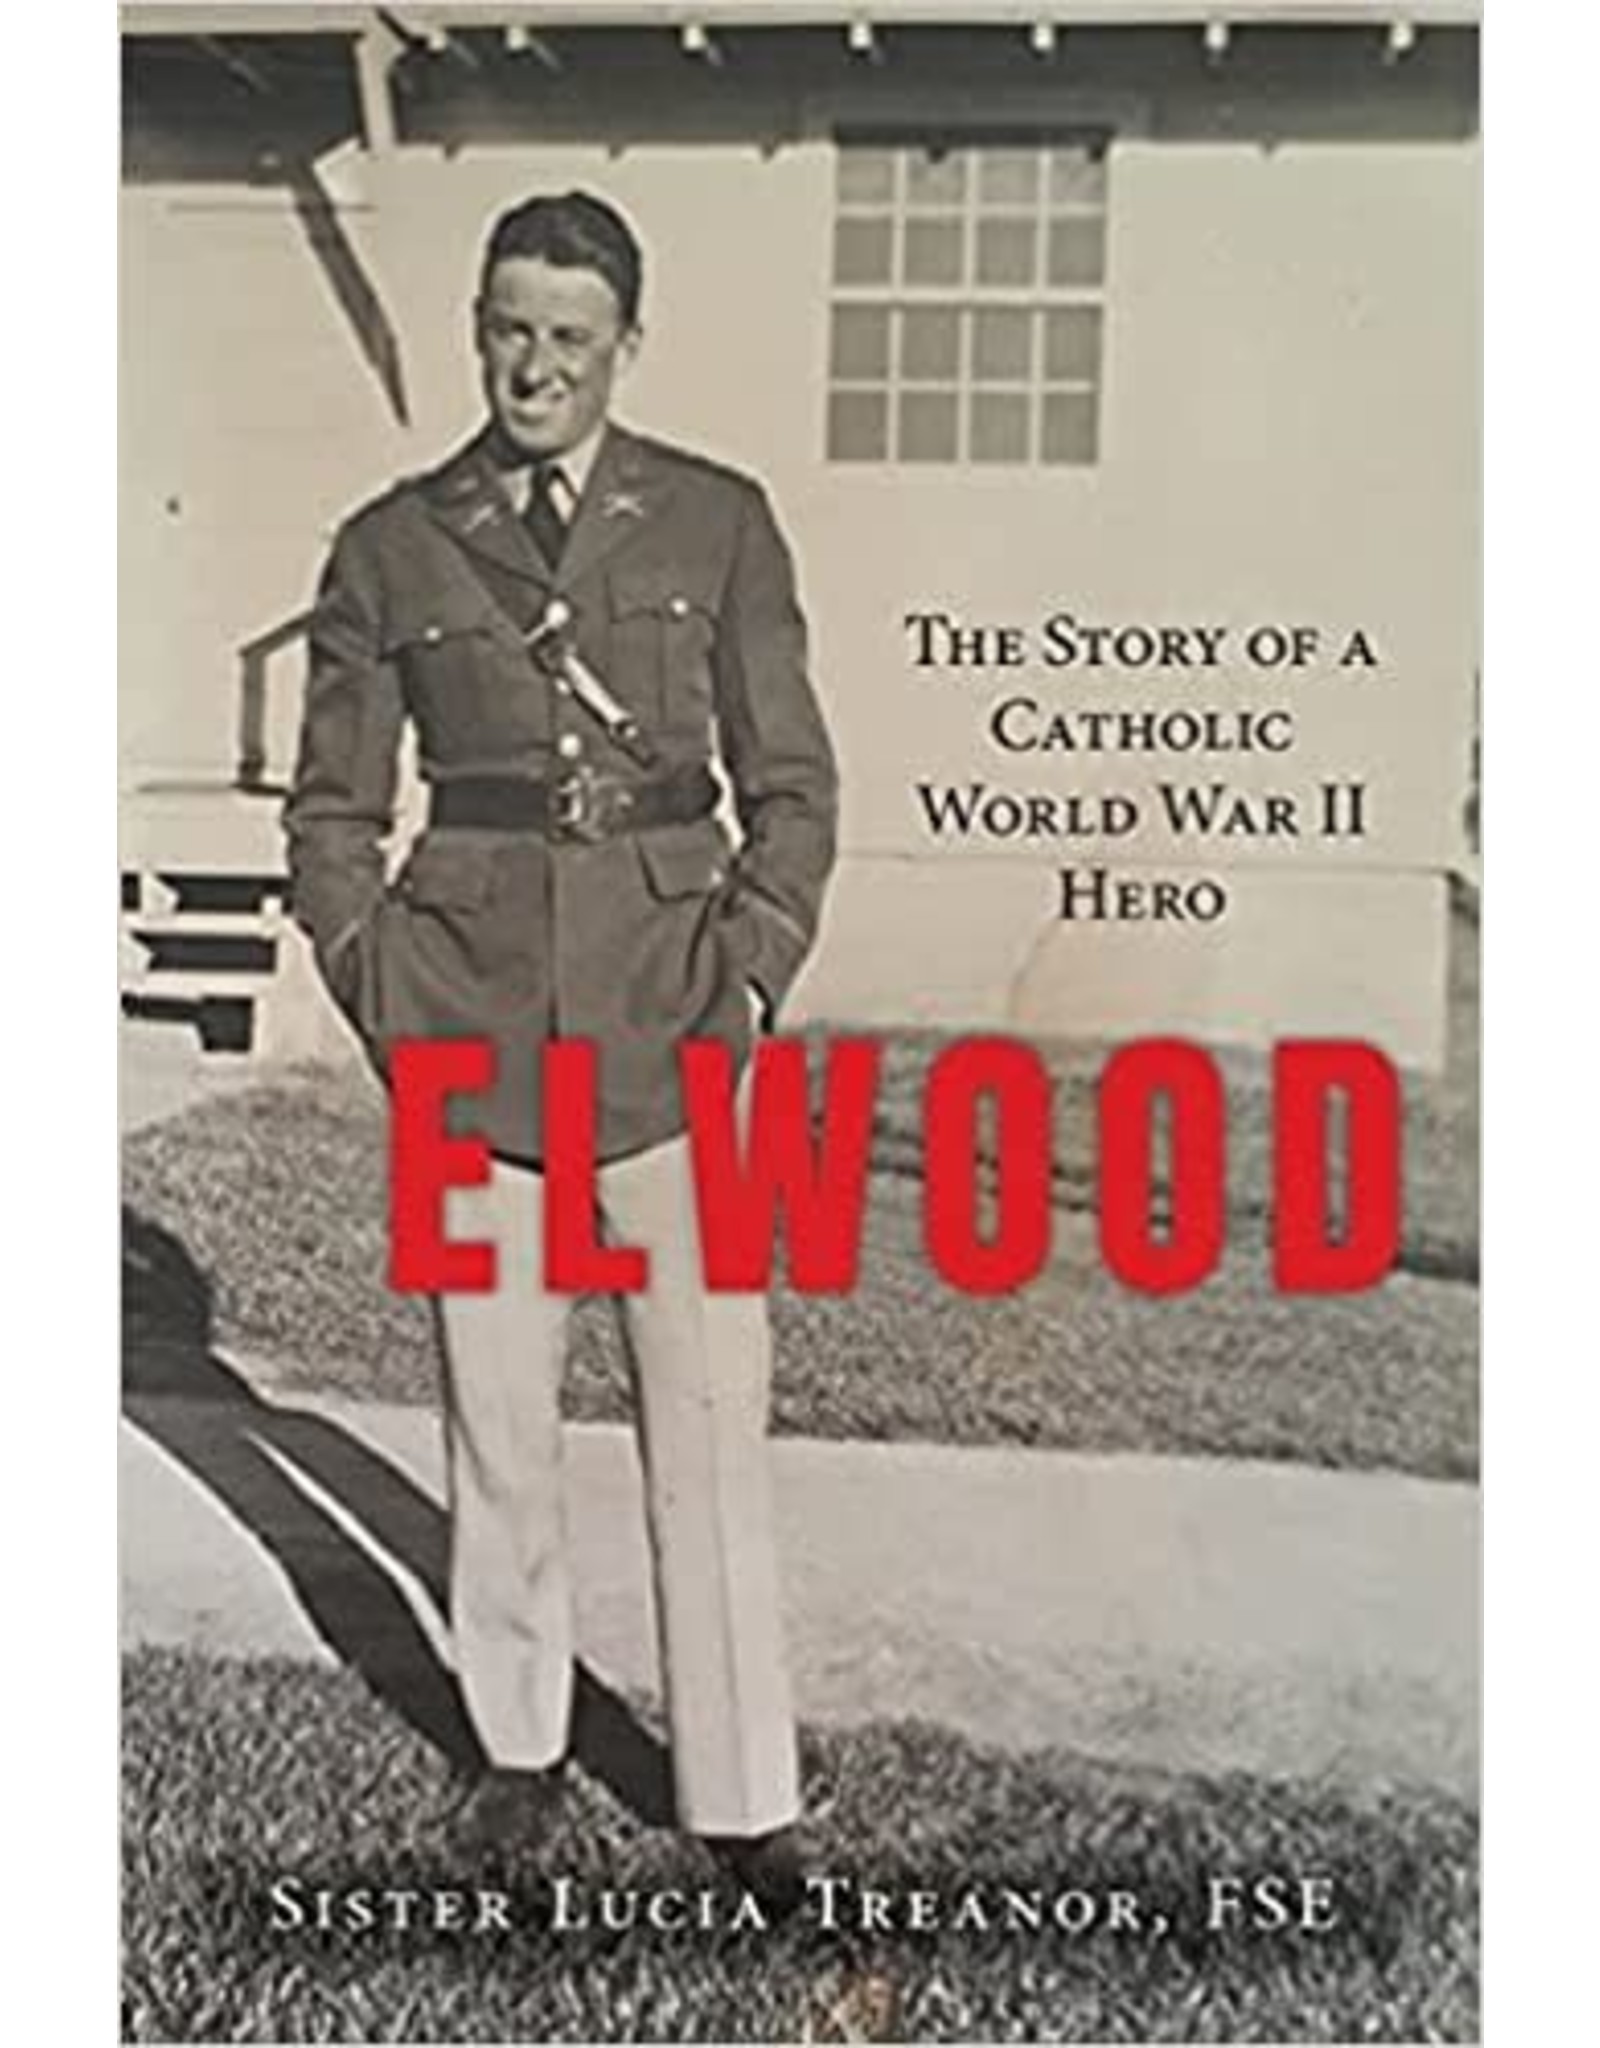 OSV (Our Sunday Visitor) Elwood: The Story of a Catholic World War II Hero